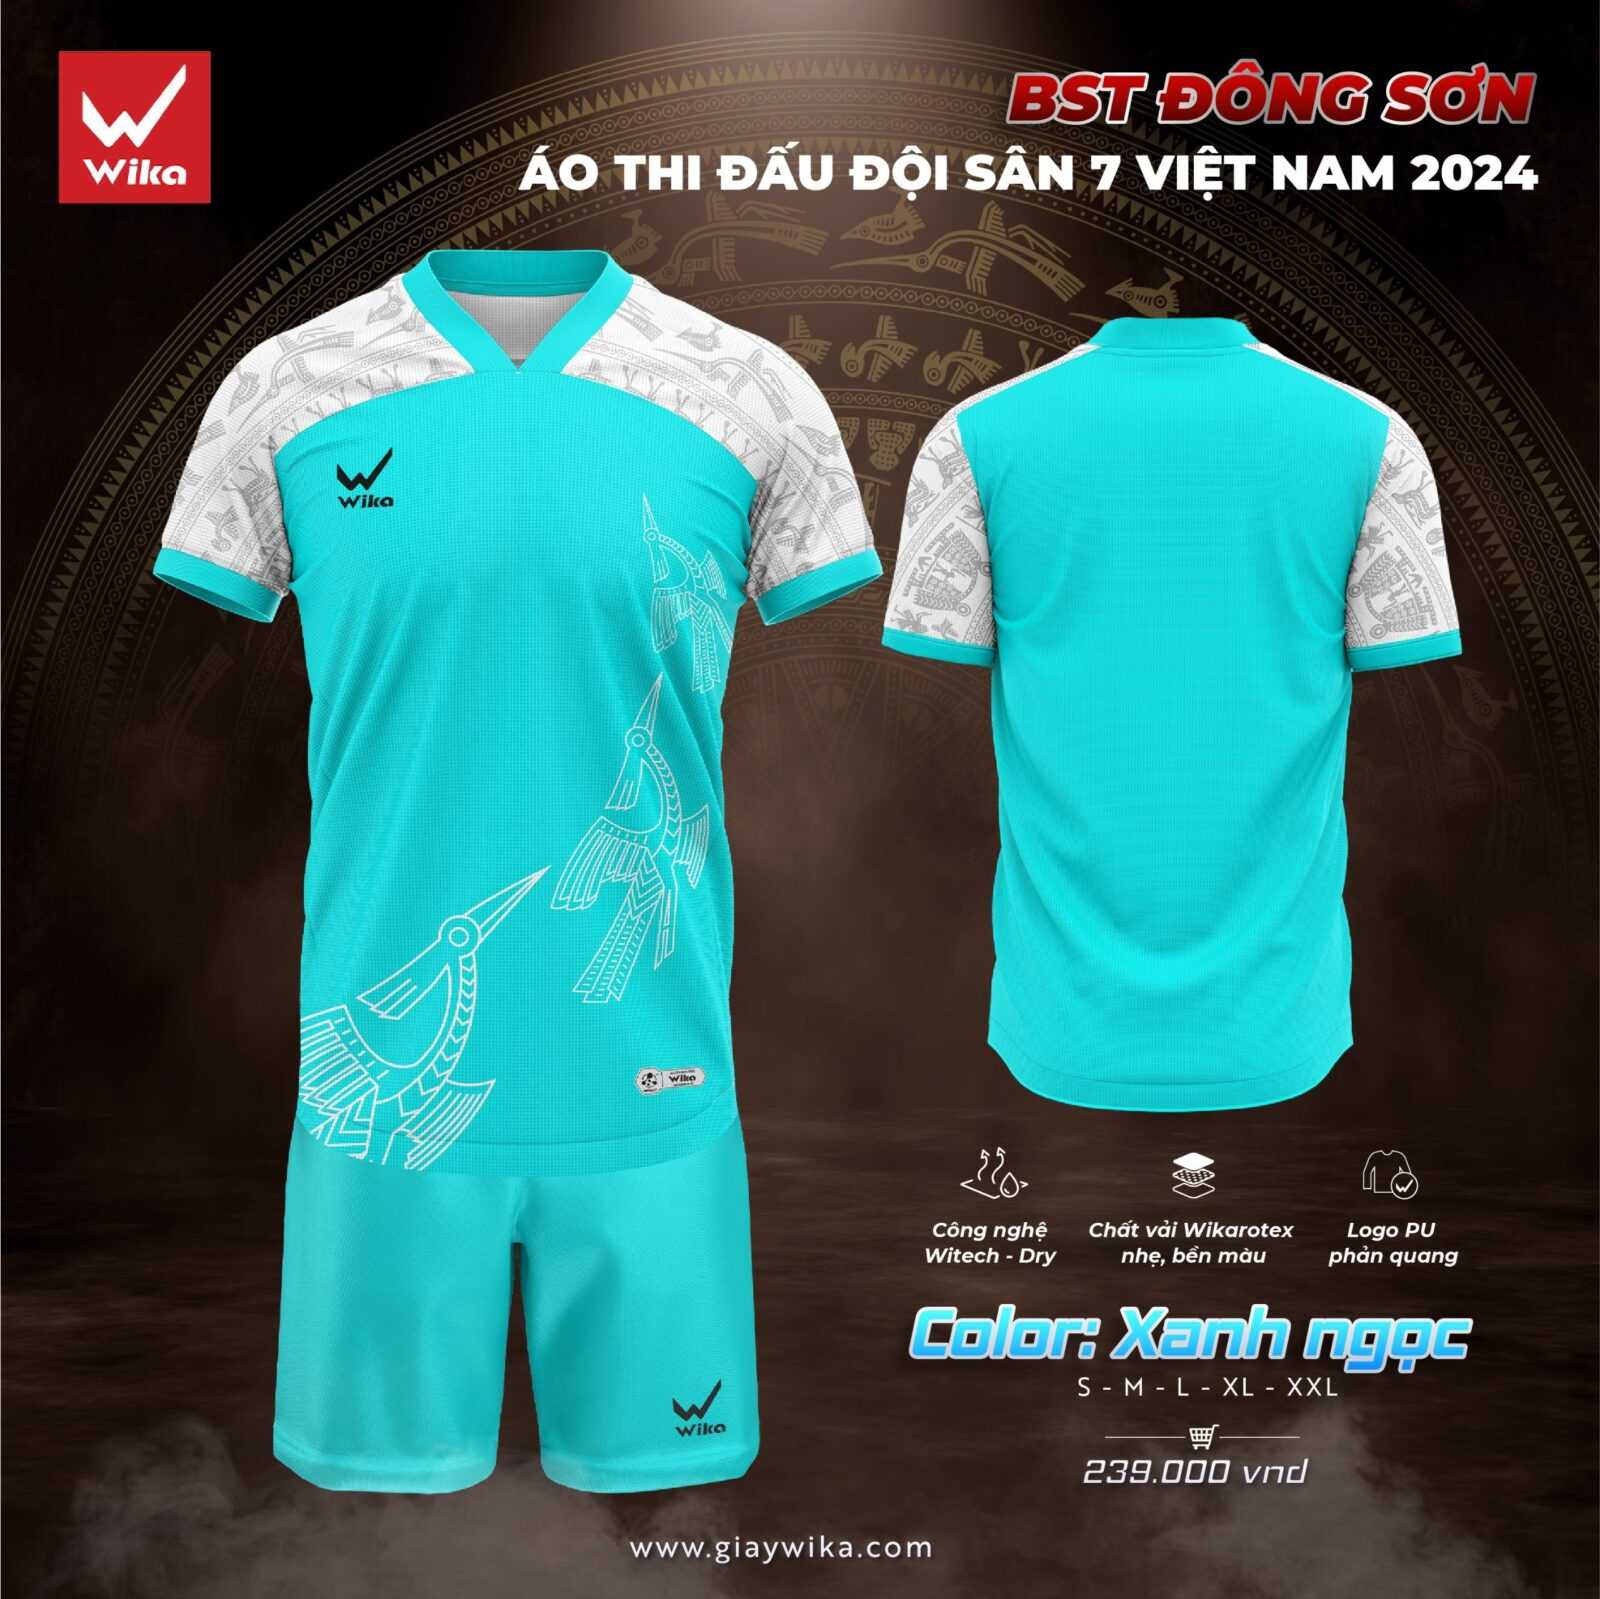 Bộ quần áo thể thao bóng đá thi đấu đội sân 7 S7 Việt Nam – BST chính hãng WIKA Đông Sơn mới năm 2024 nhiều màu trắng 1